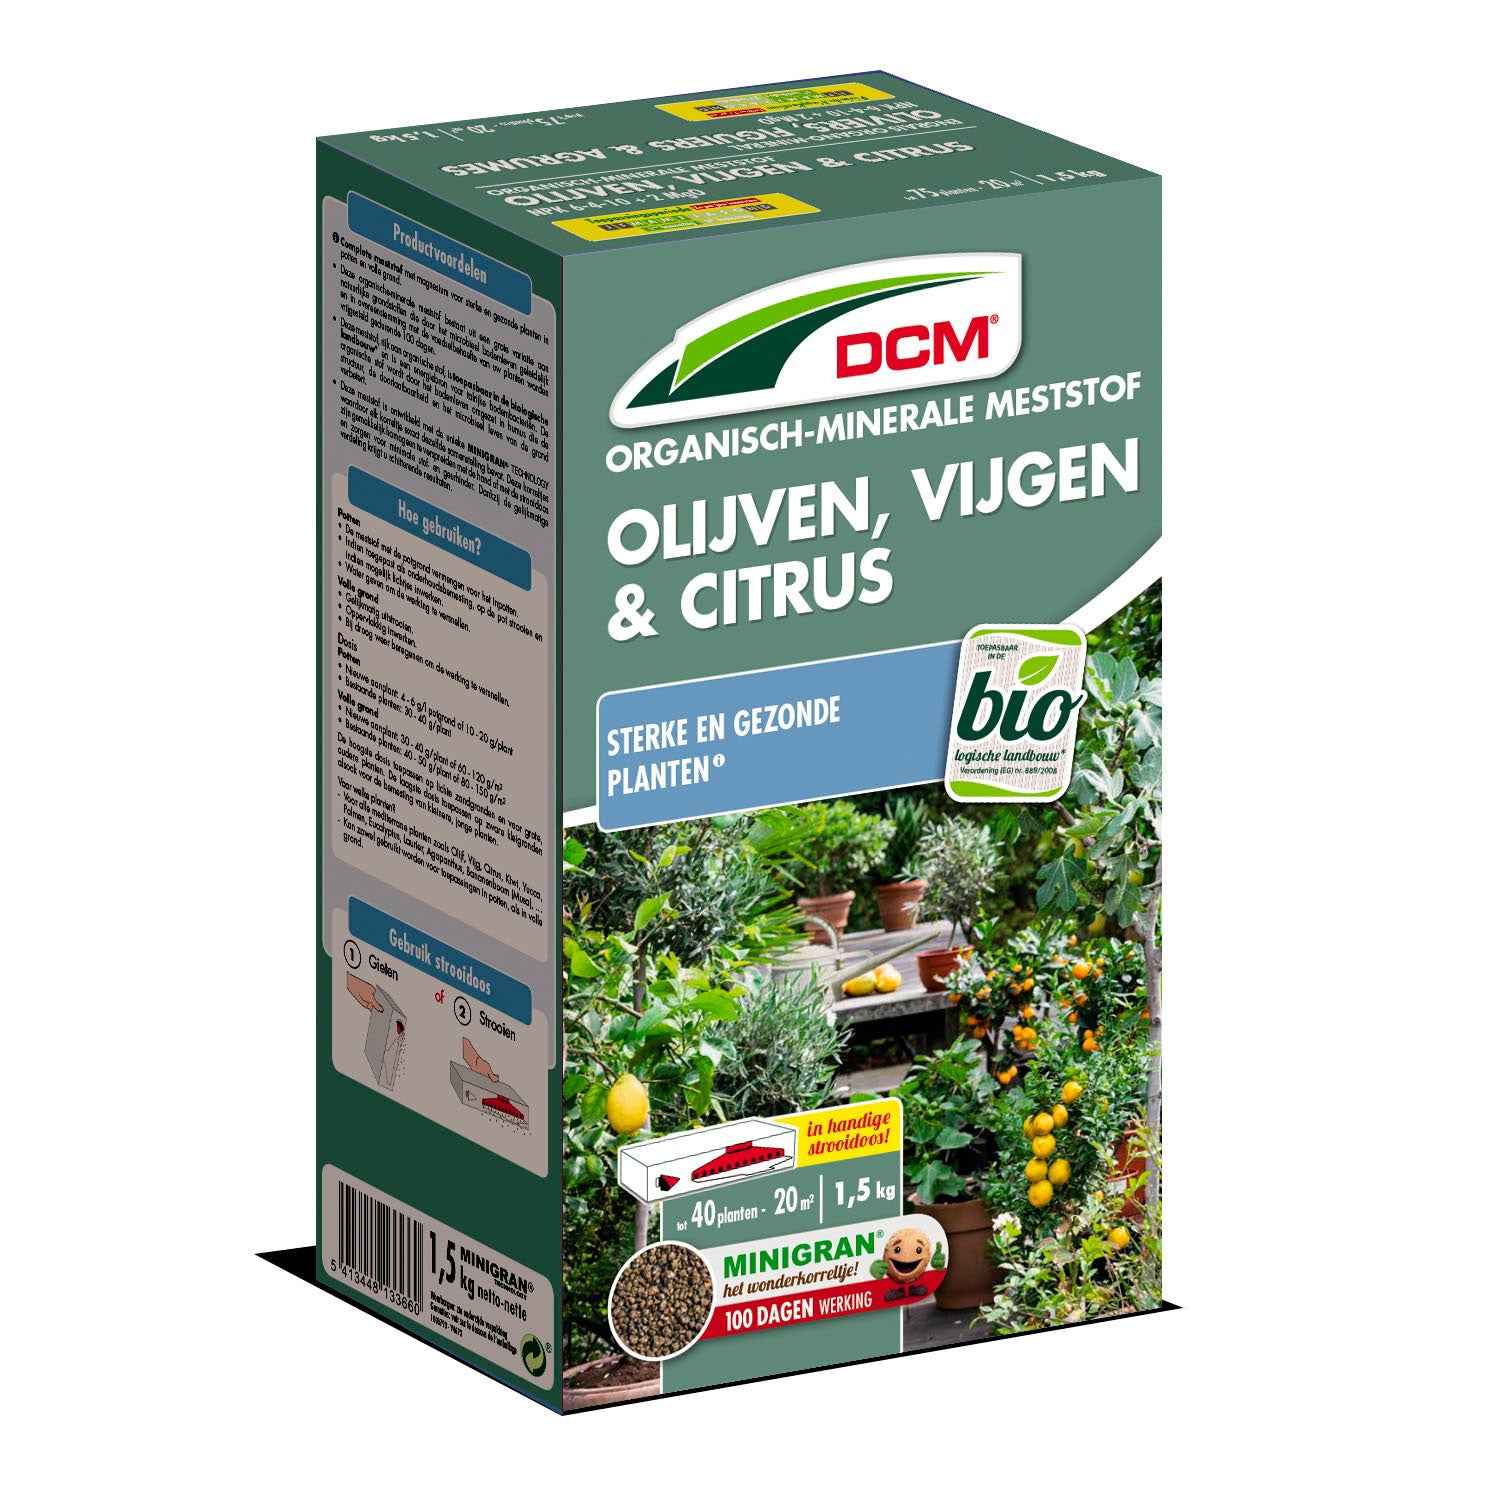 Engrais végétal pour oliviers, figuiers et citronniers - Biologique 1,5 kg - DCM - Engrais biologique